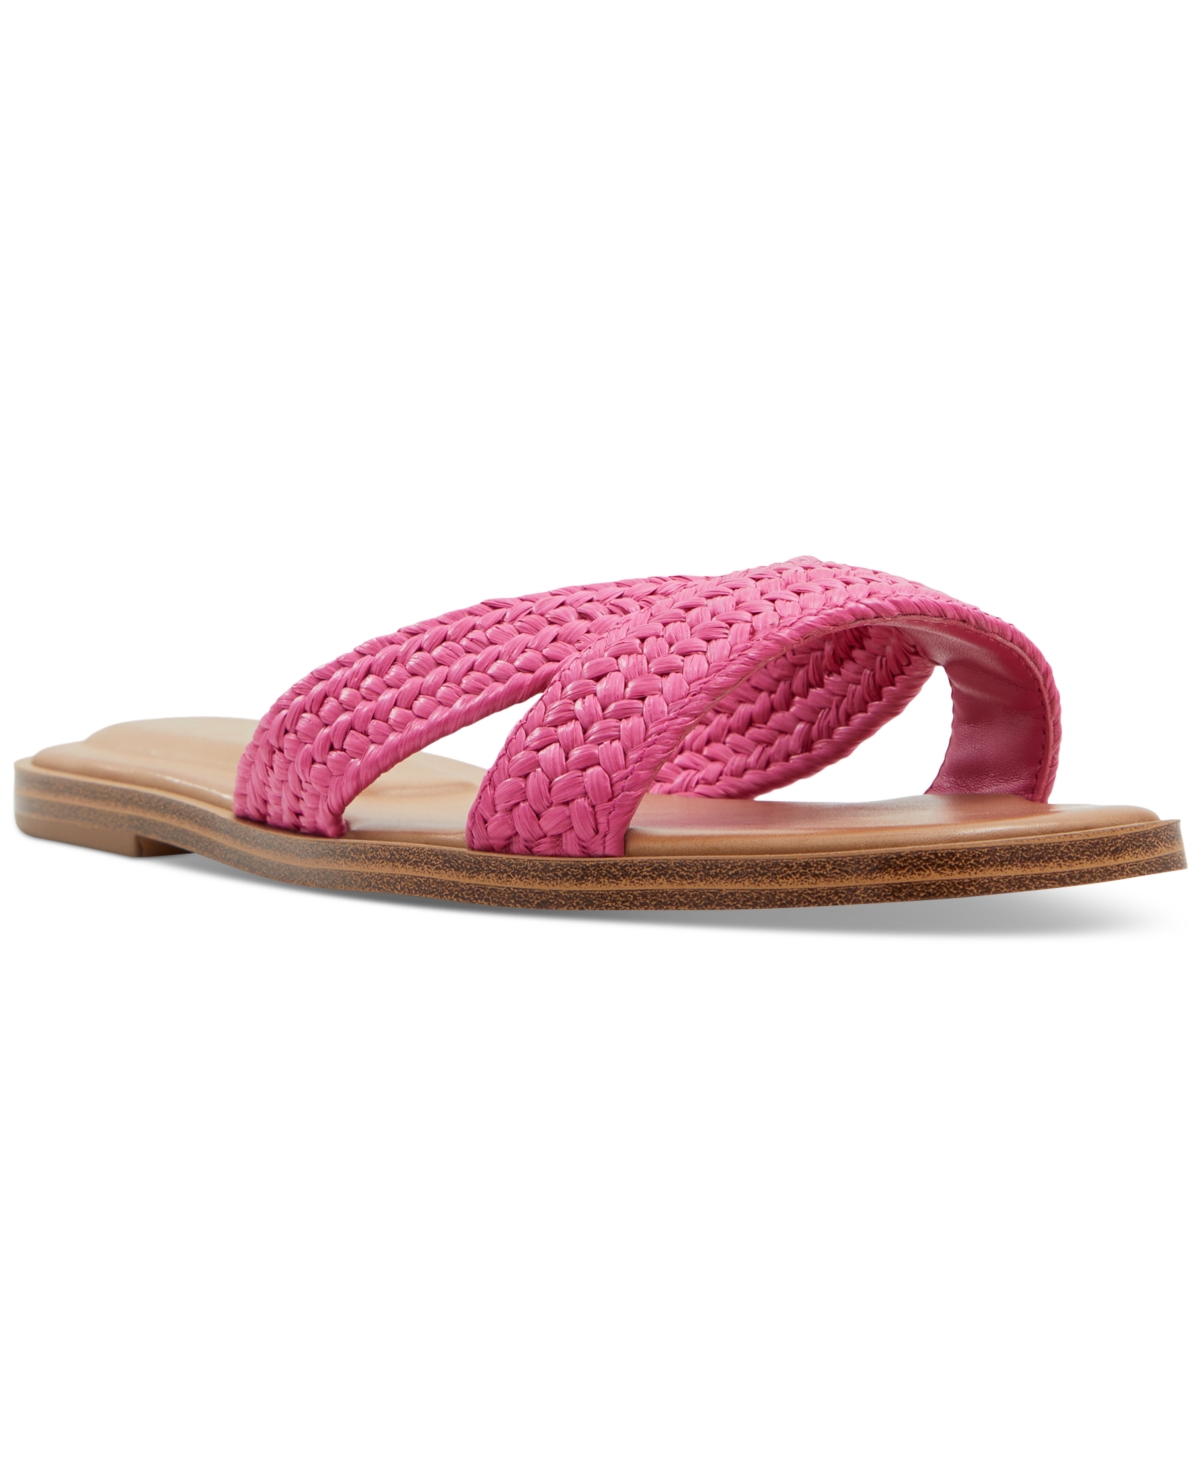 Aldo Women's Caria Raffia Crisscross Slide Flat Sandals In Bright Pink Raffia